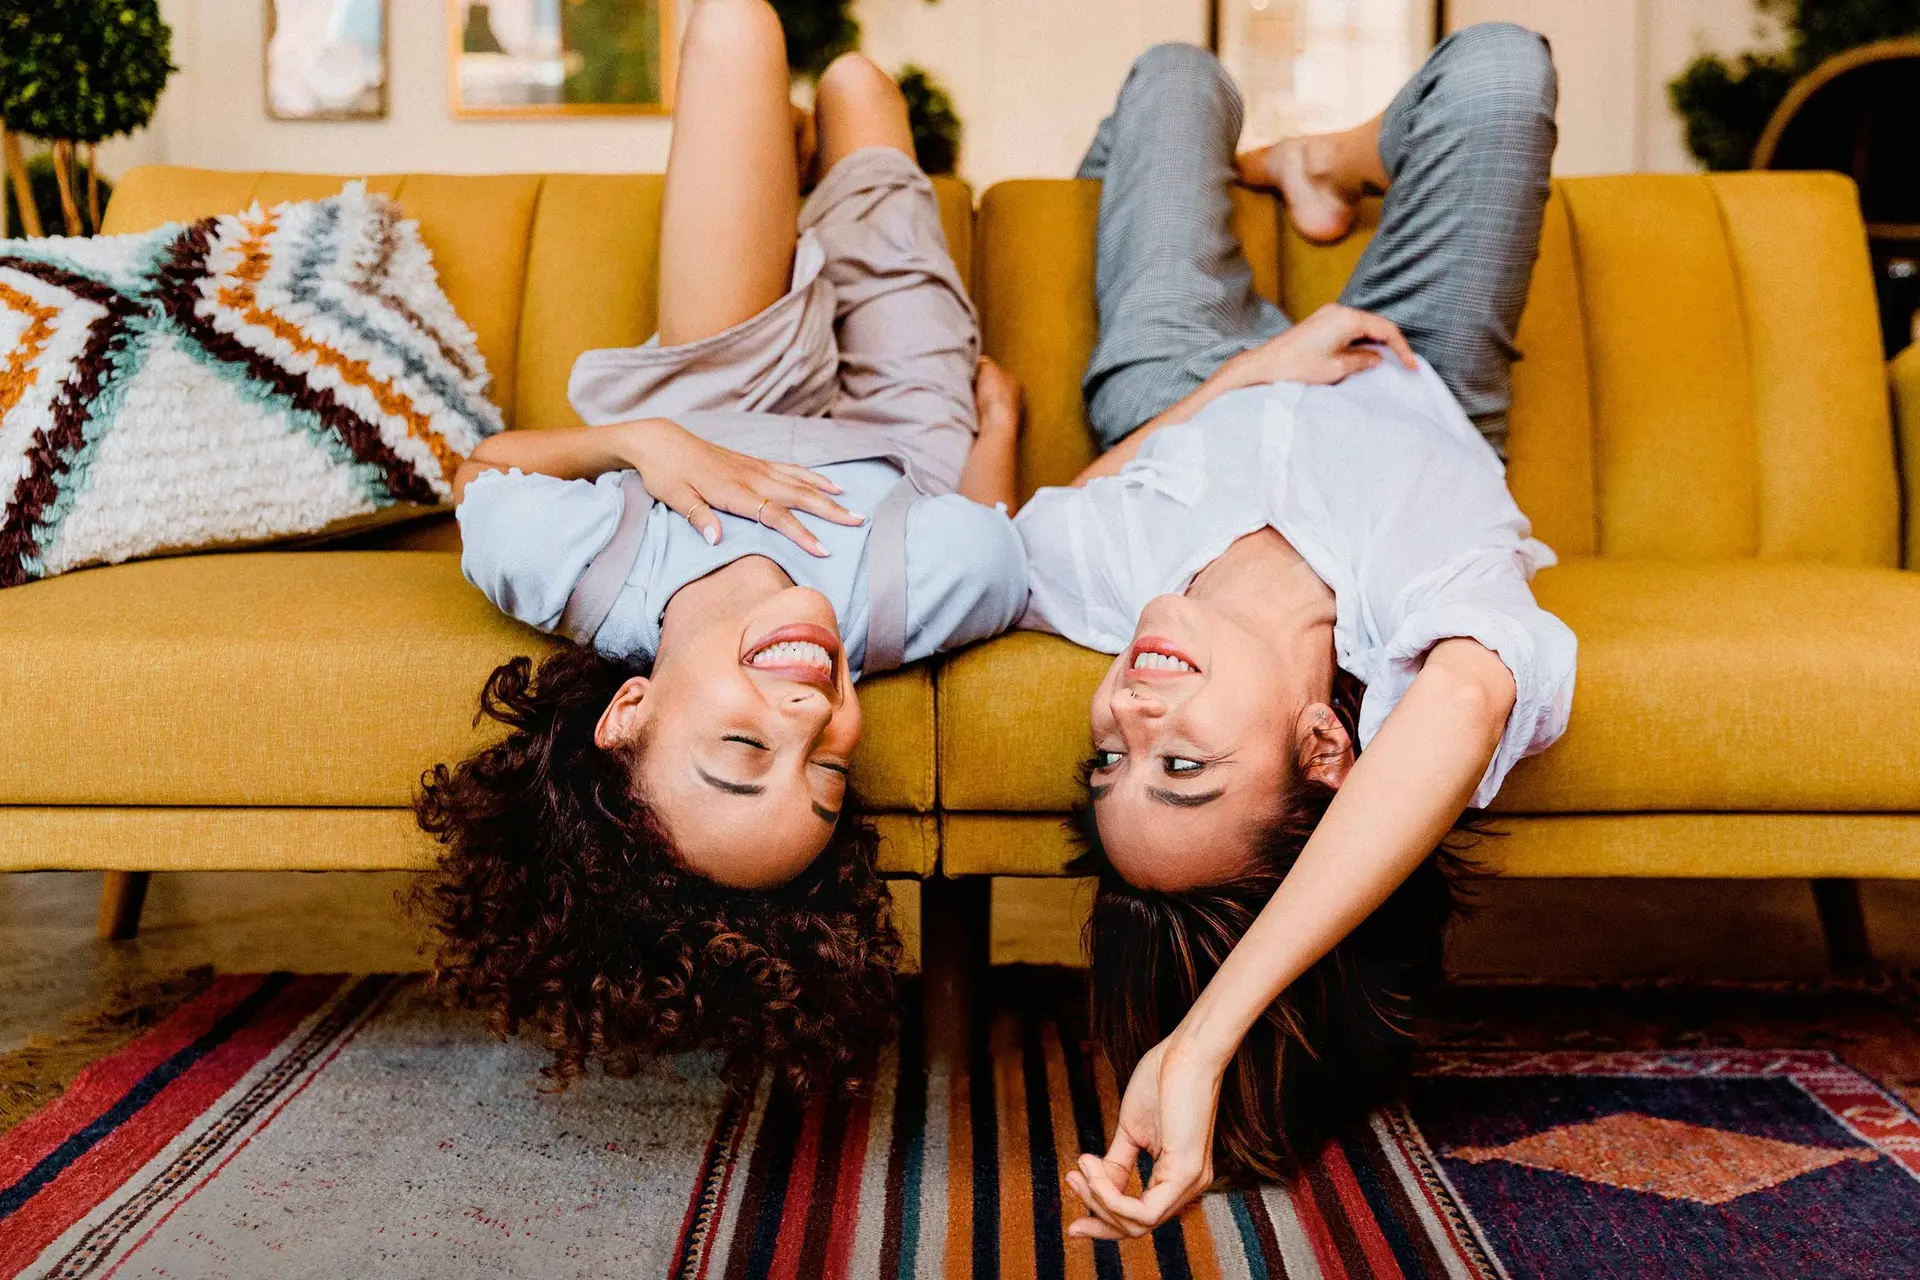 Zwei junge Frauen liegen kopfüber ausgelassen und lachend auf einem gelben Sofa in einem Wohnzimmer.